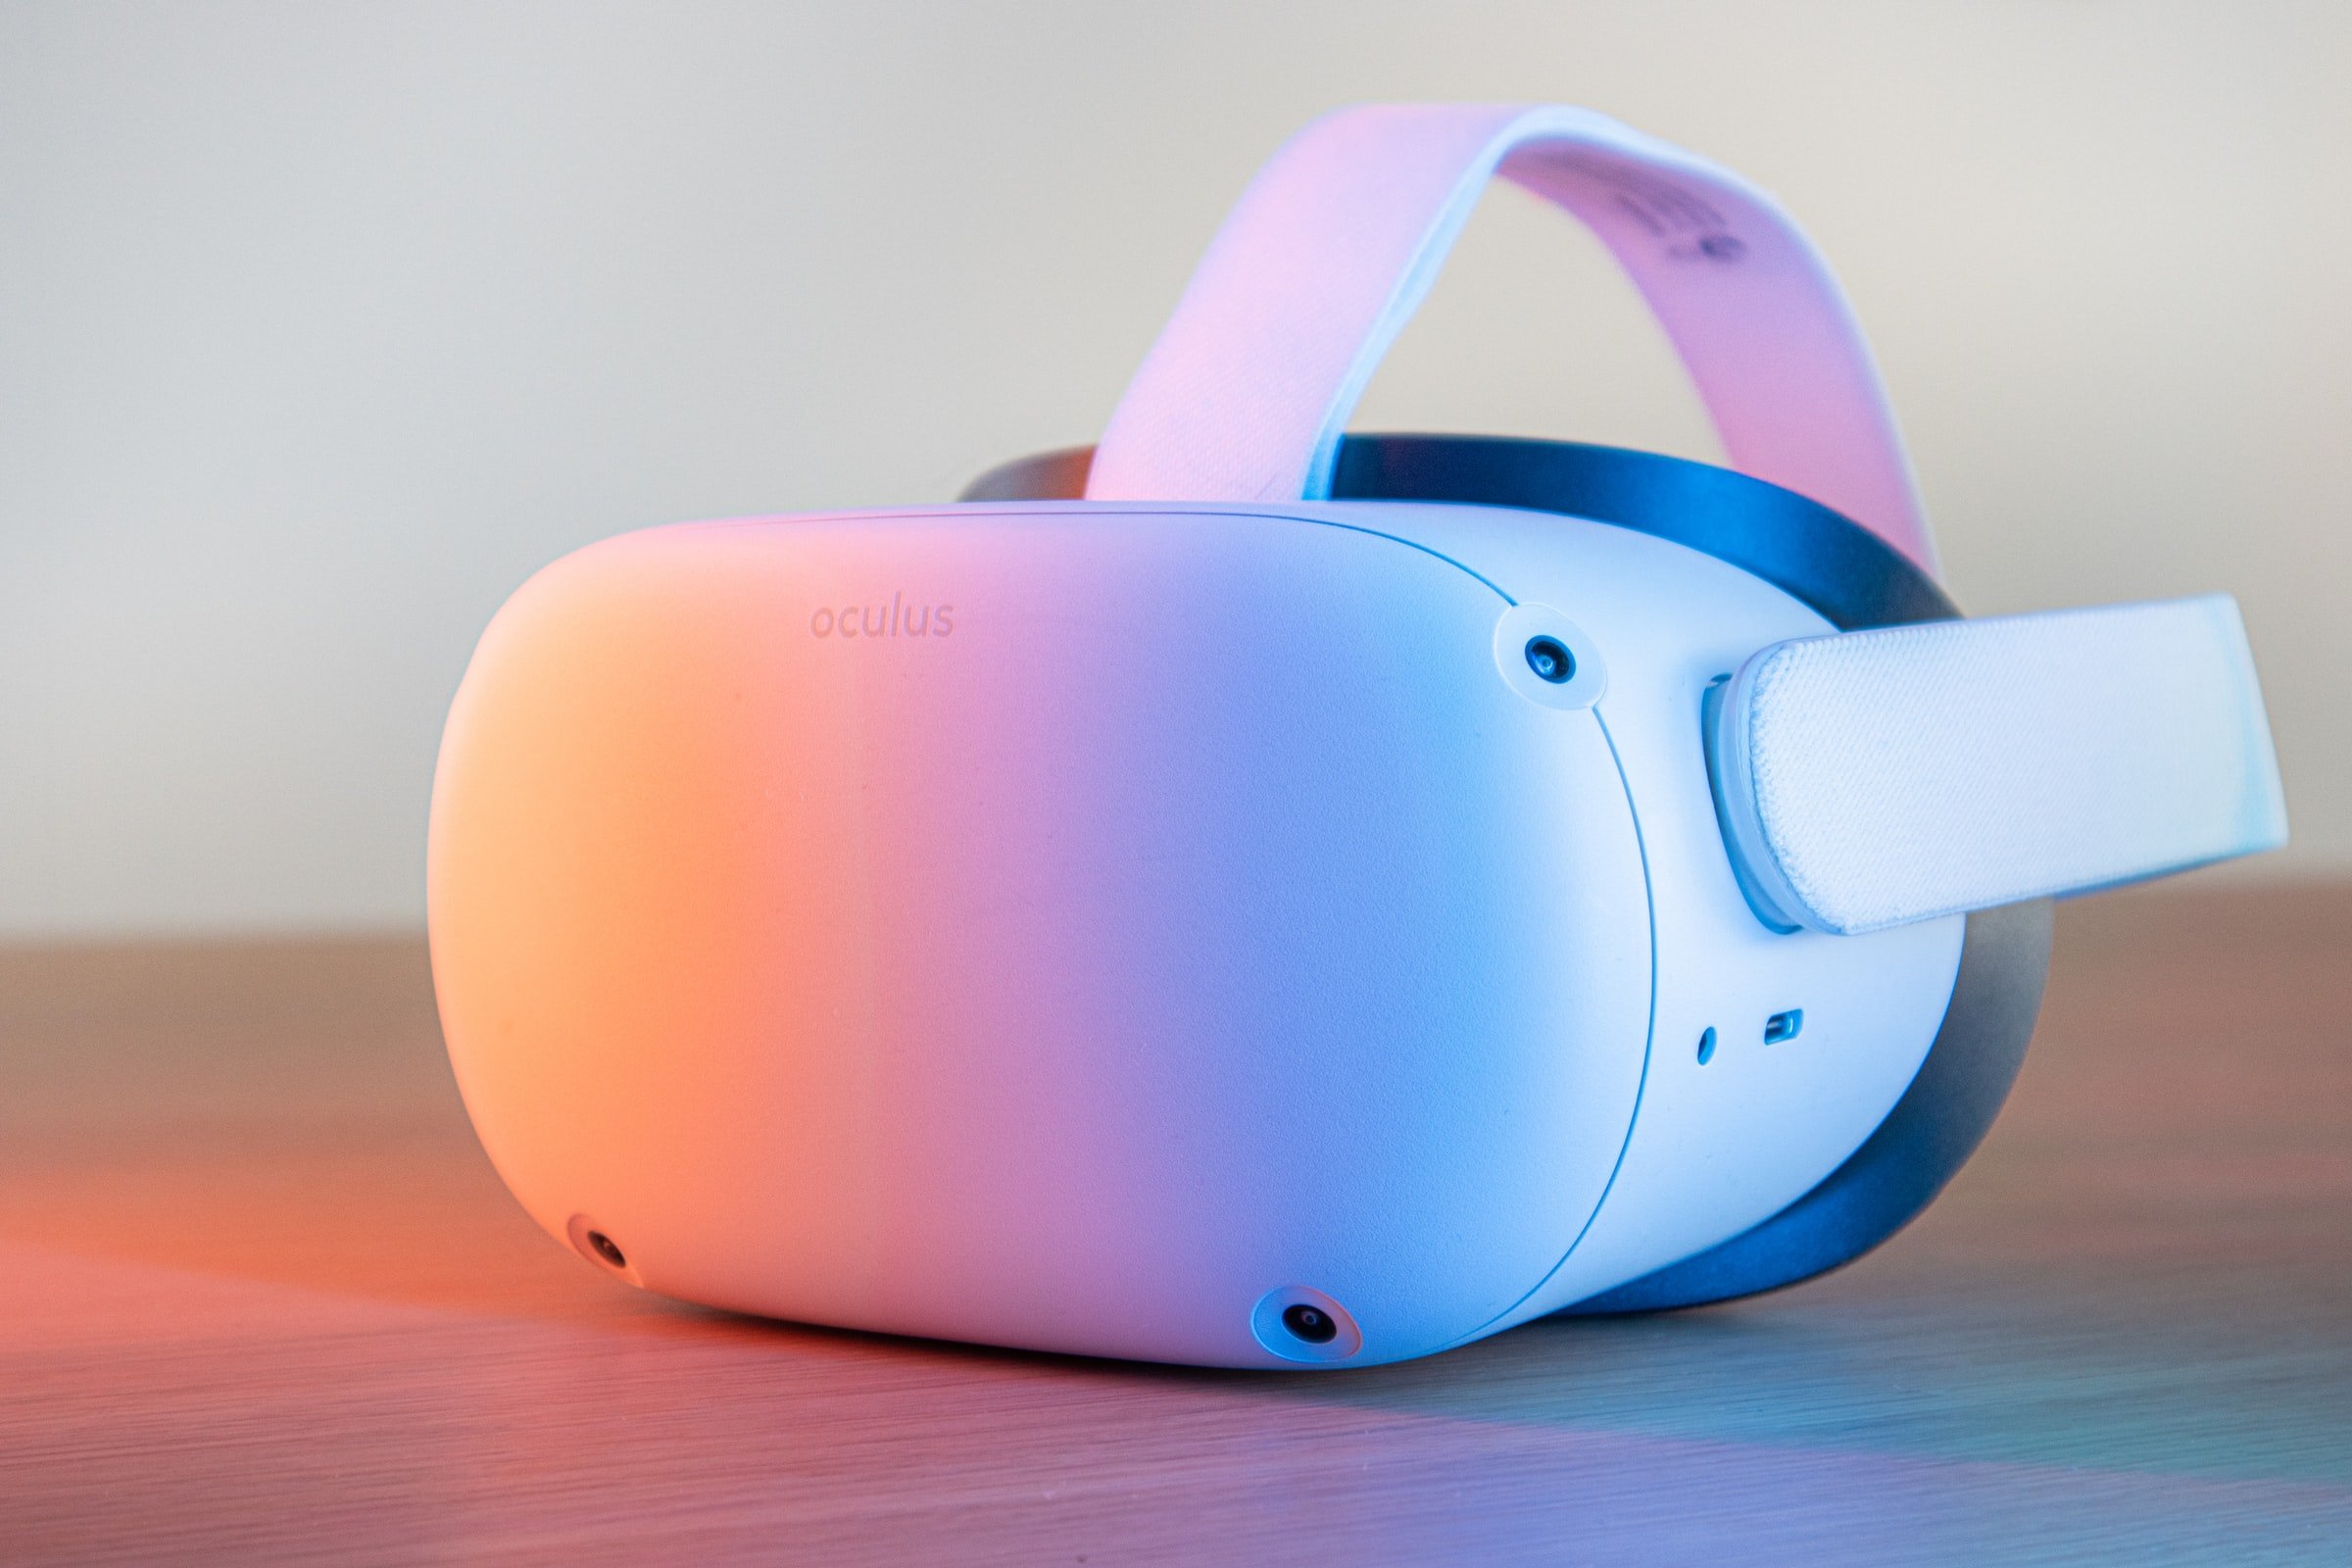 Nahaufnahme: Ein Oculus Virtual Reality Headset in weiß auf einem Tisch